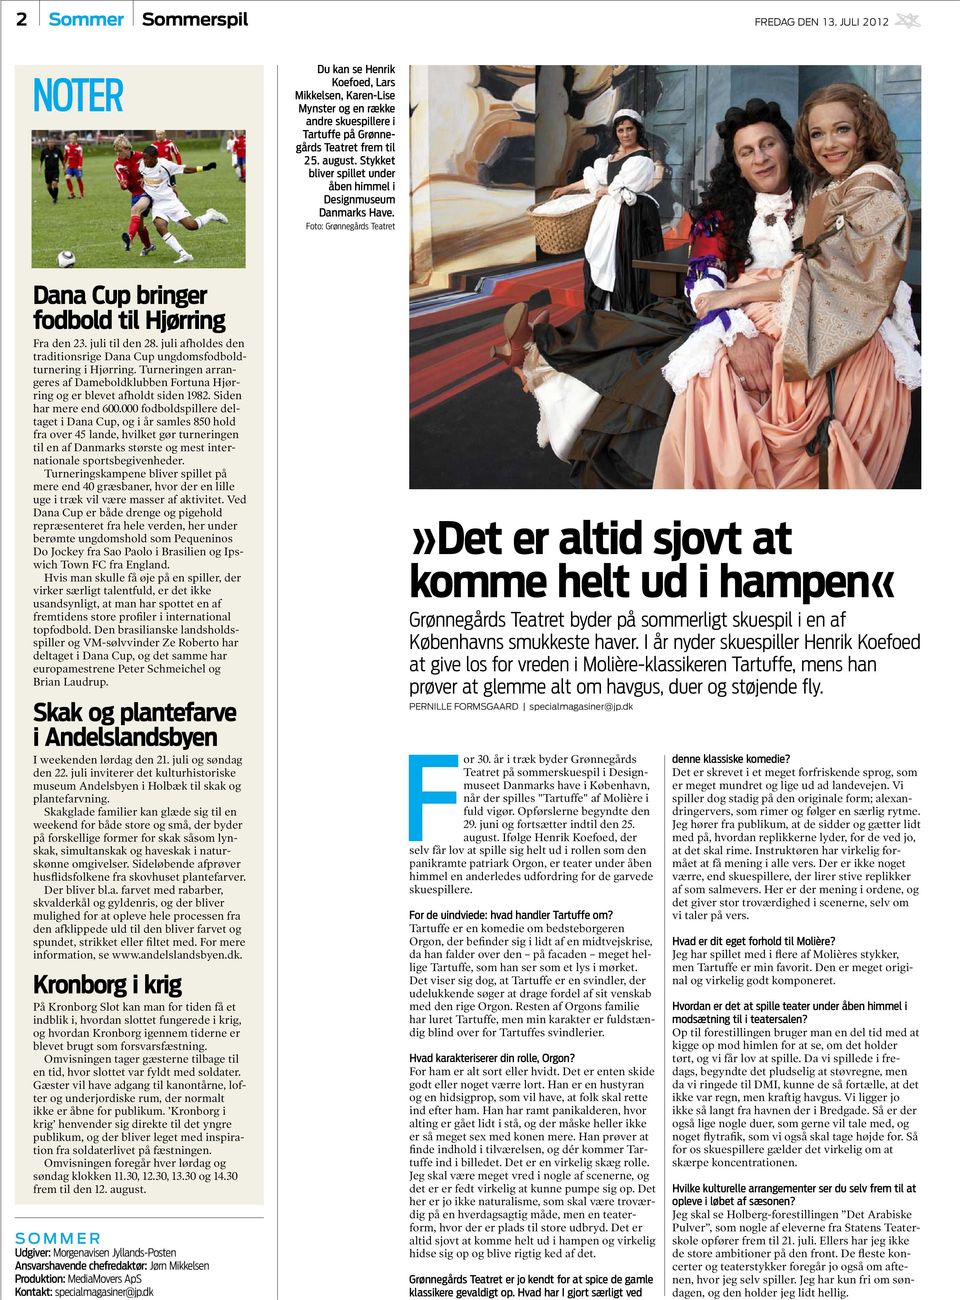 juli afholdes den traditionsrige Dana Cup ungdomsfodboldturnering i Hjørring. Turneringen arrangeres af Dameboldklubben Fortuna Hjørring og er blevet afholdt siden 1982. Siden har mere end 600.